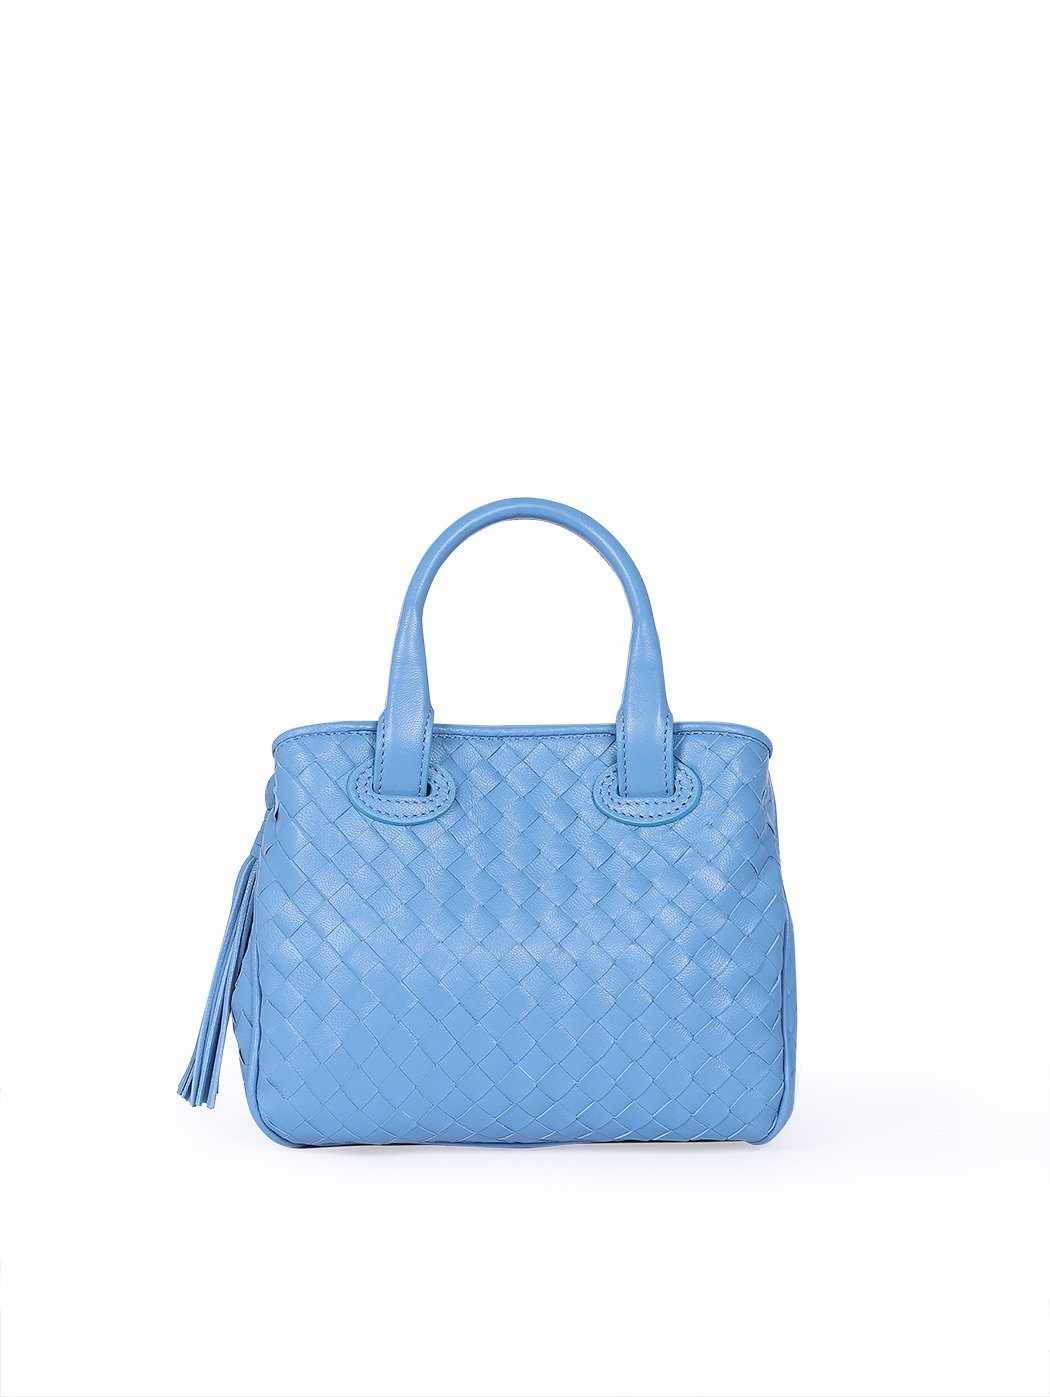 Женская плетеная сумочка коллекции Intrecci светло - голубого цвета